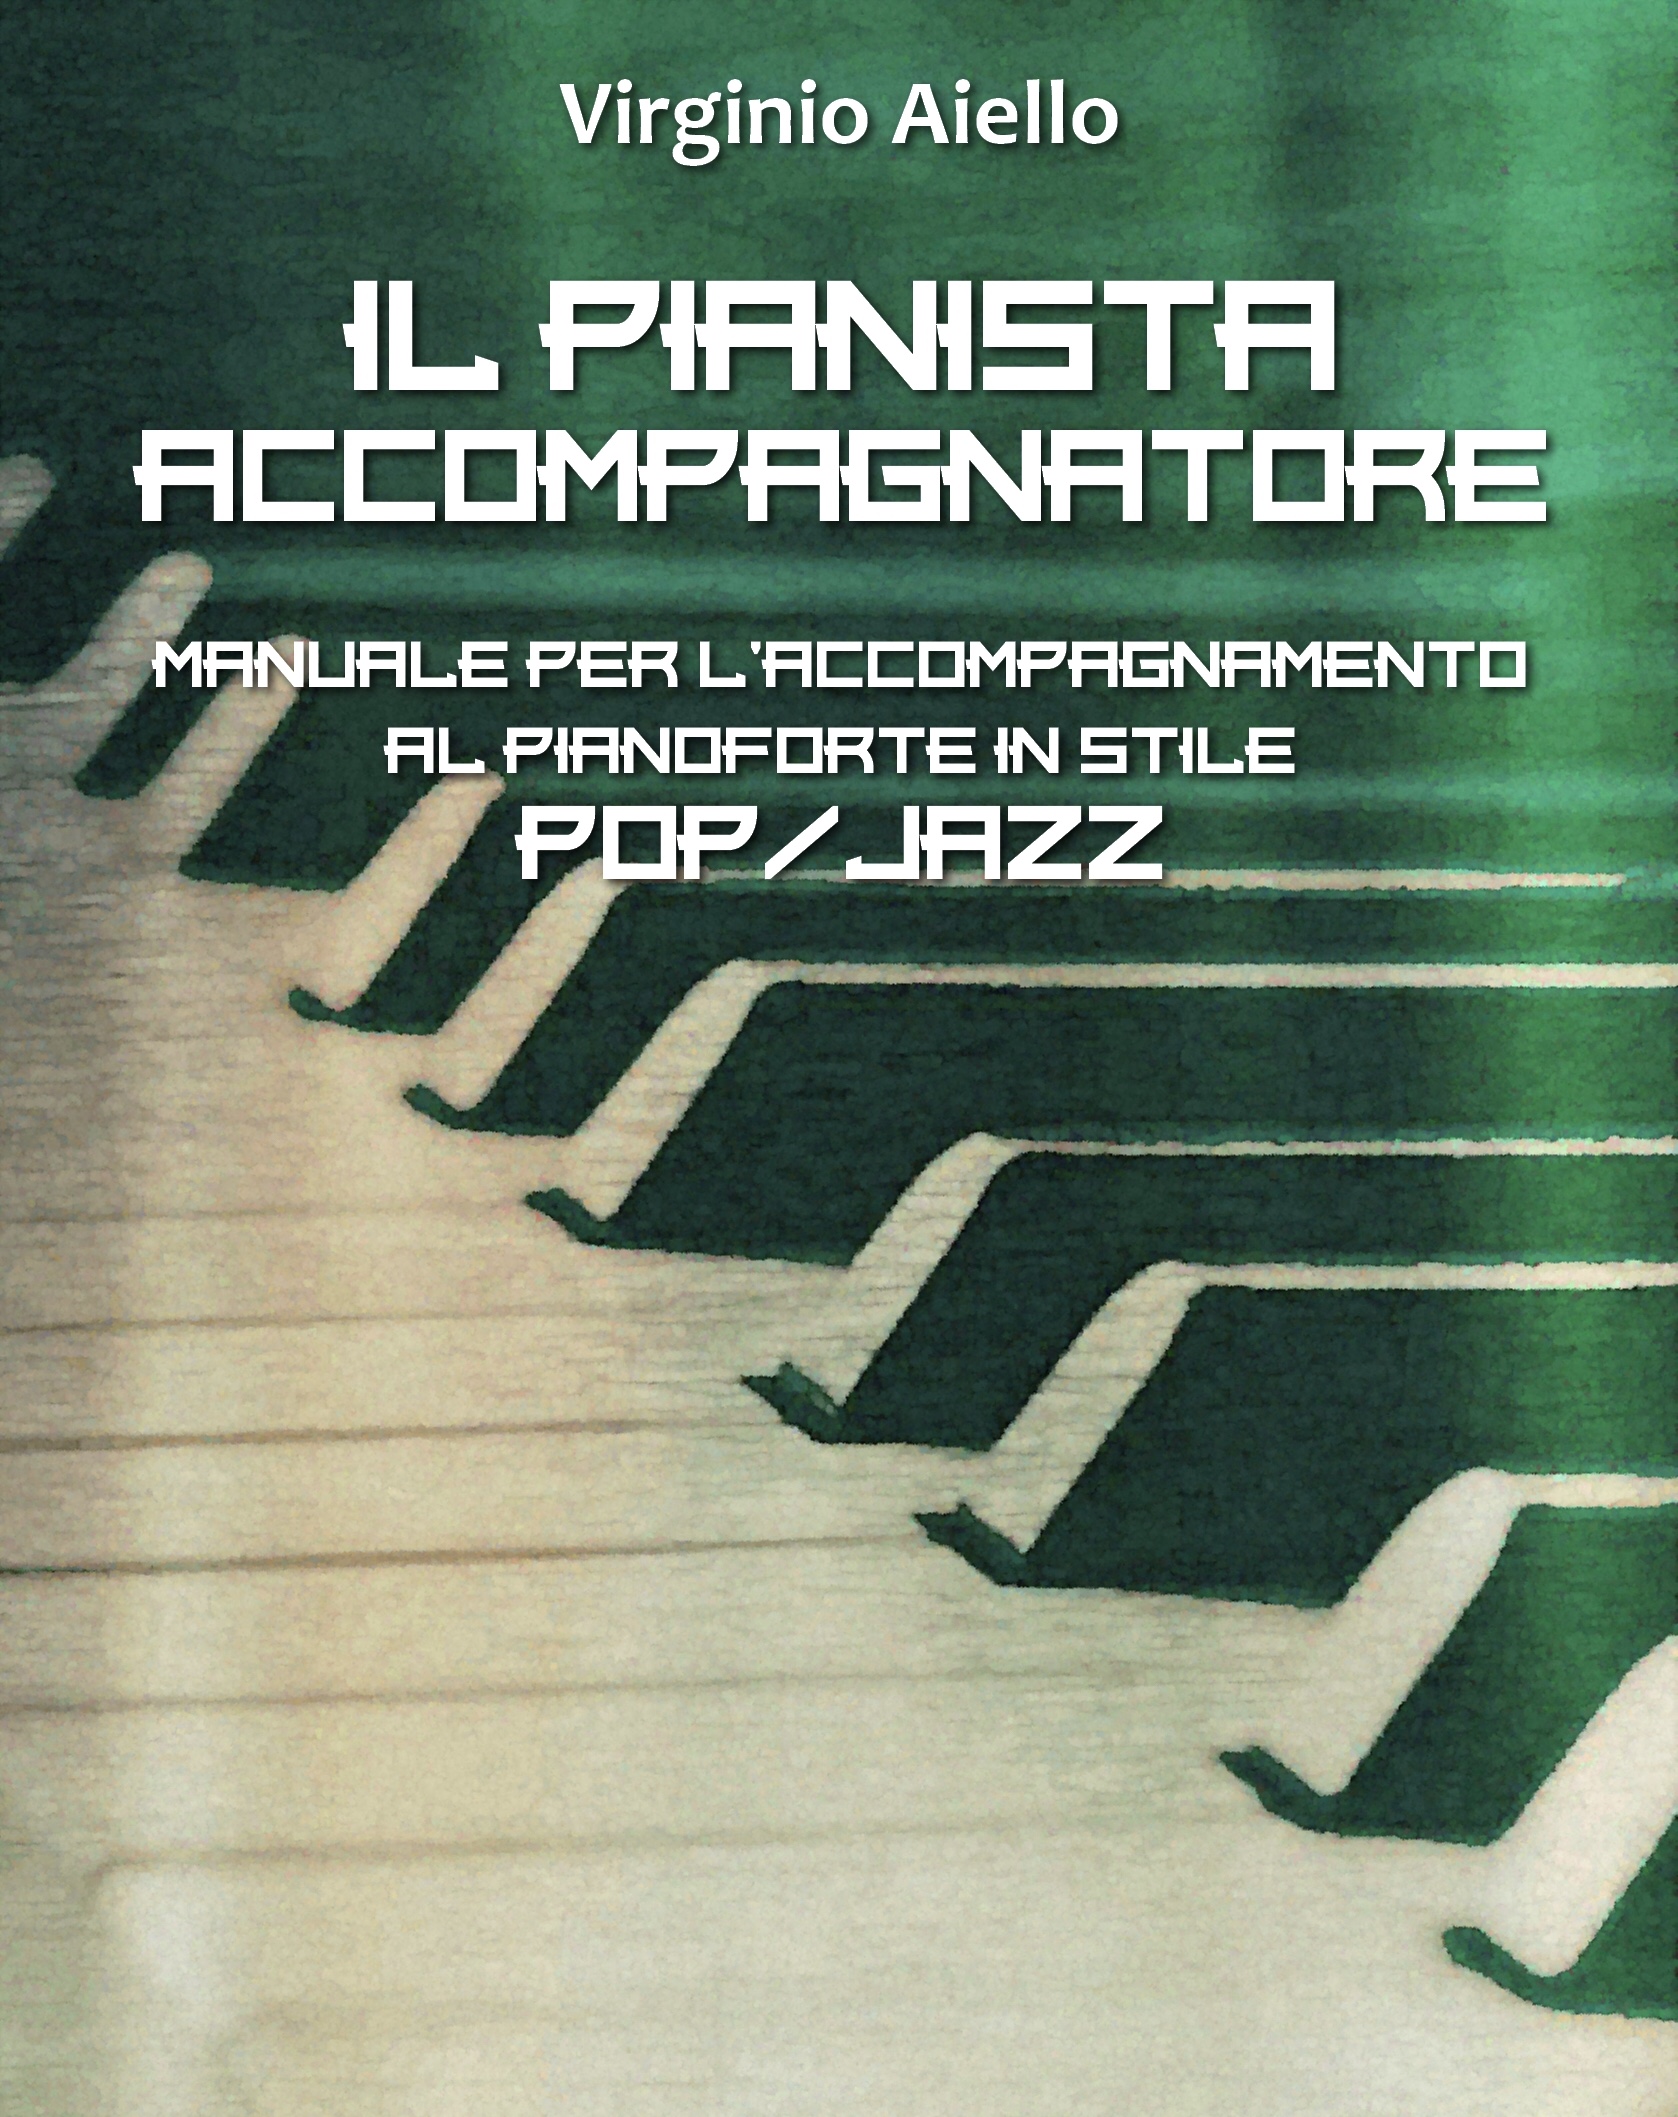 IL PIANISTA ACCOMPAGNATORE
Manuale per l’accompagnamento al pianoforte in stile Pop/Jazz